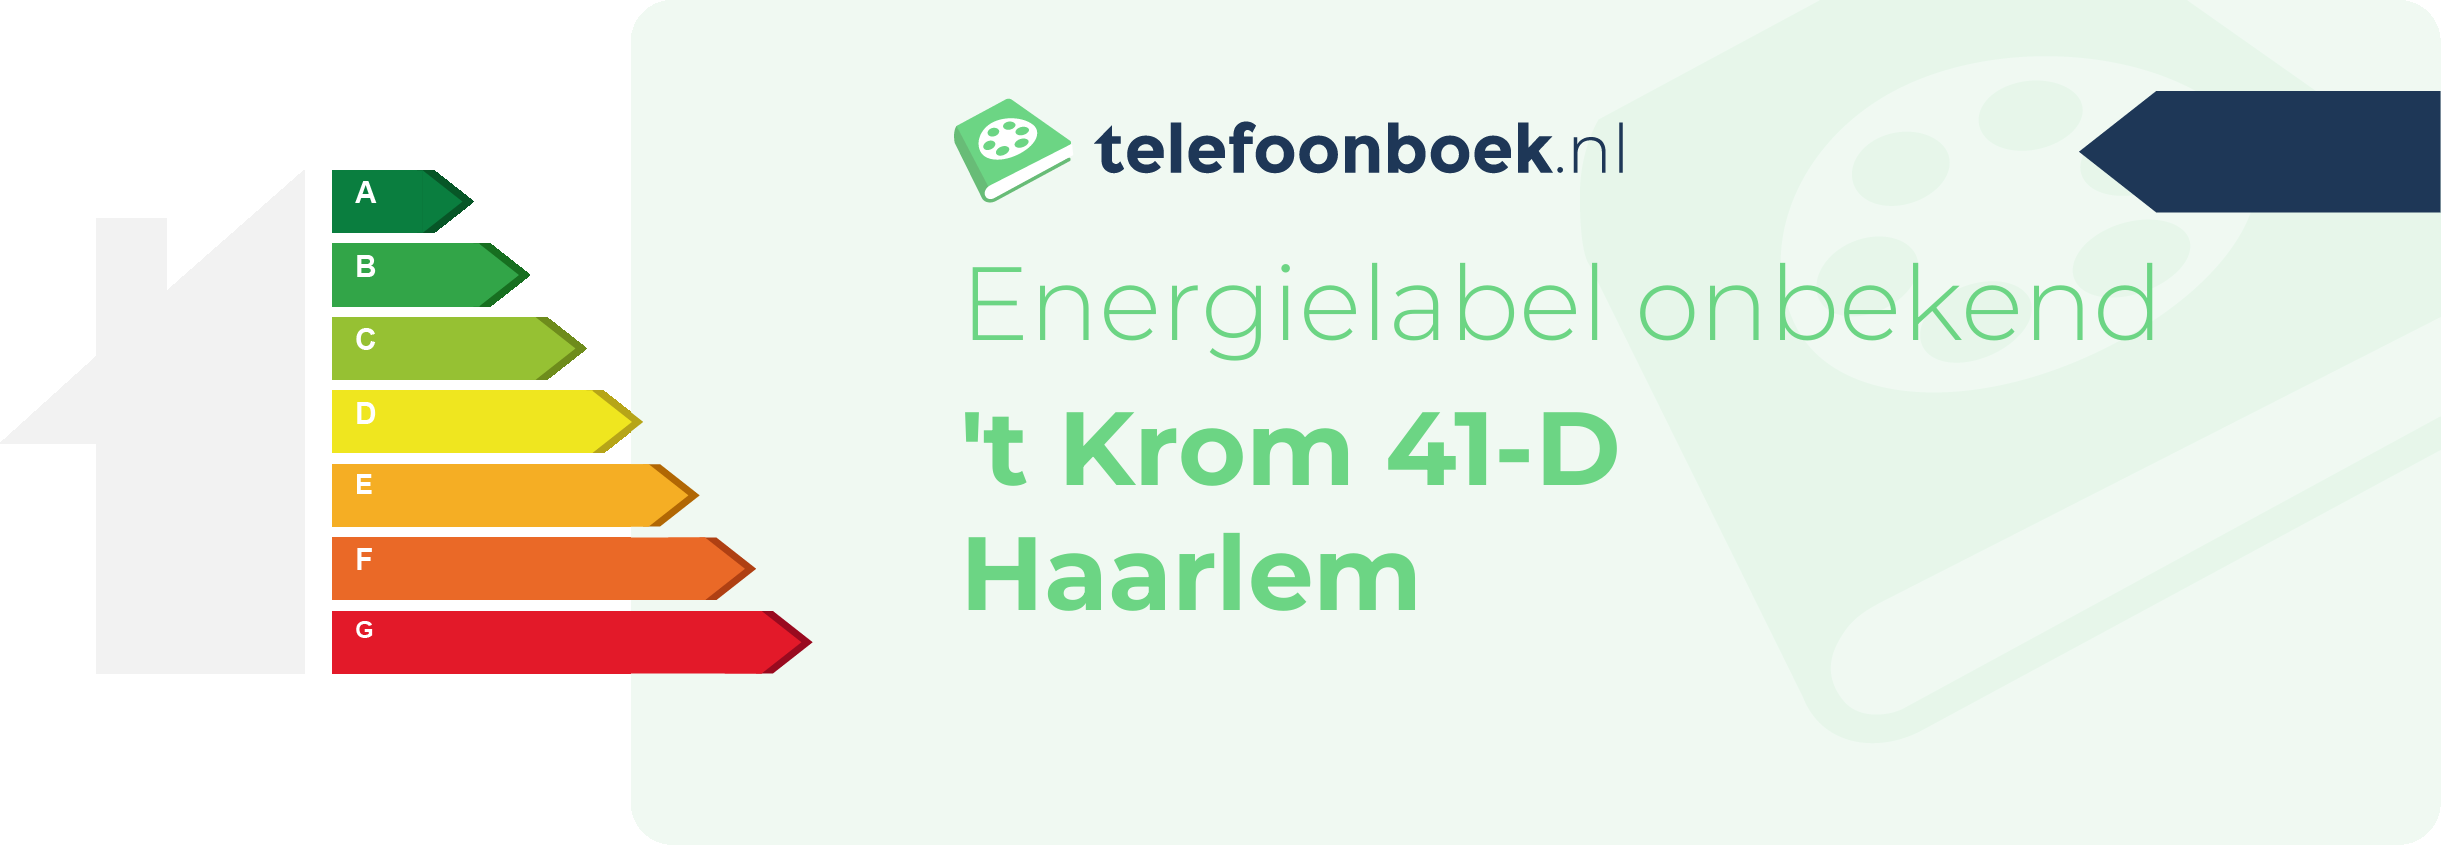 Energielabel 't Krom 41-D Haarlem